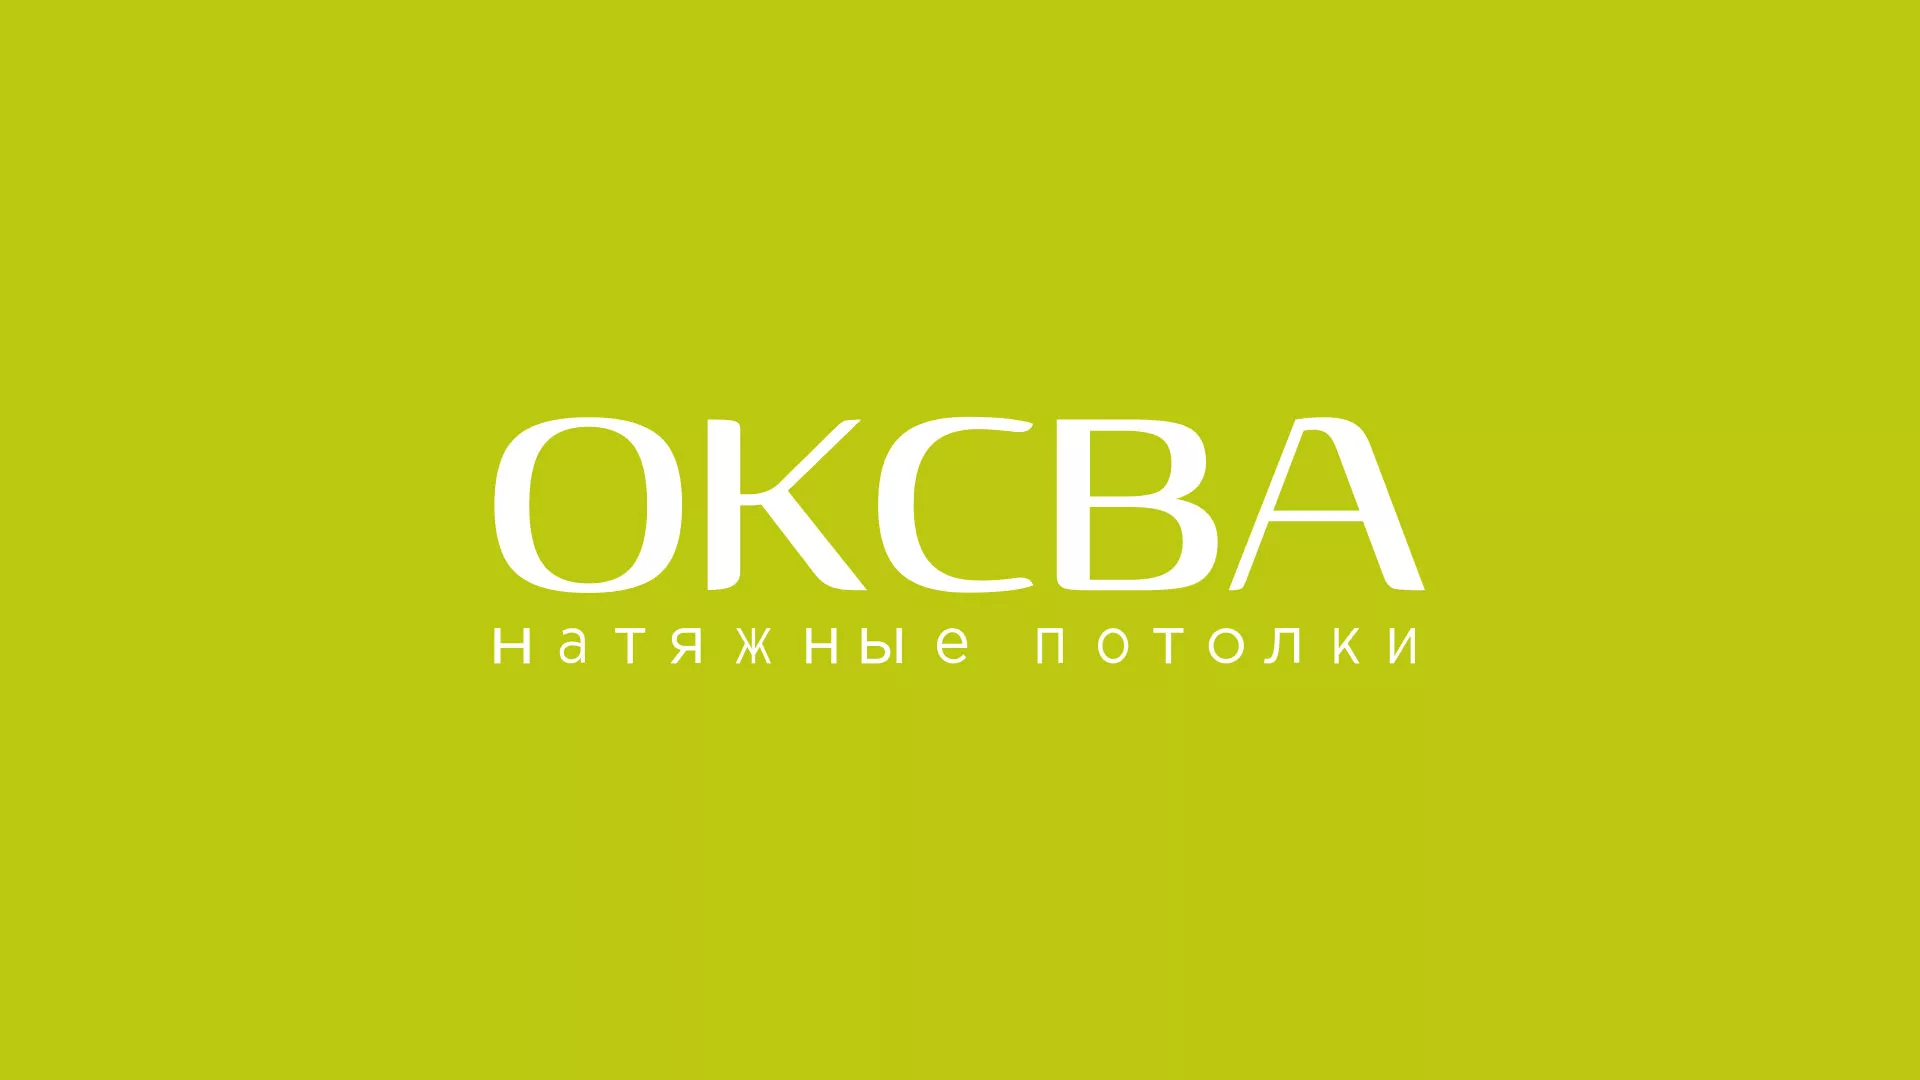 Создание сайта по продаже натяжных потолков для компании «ОКСВА» в Жуковке